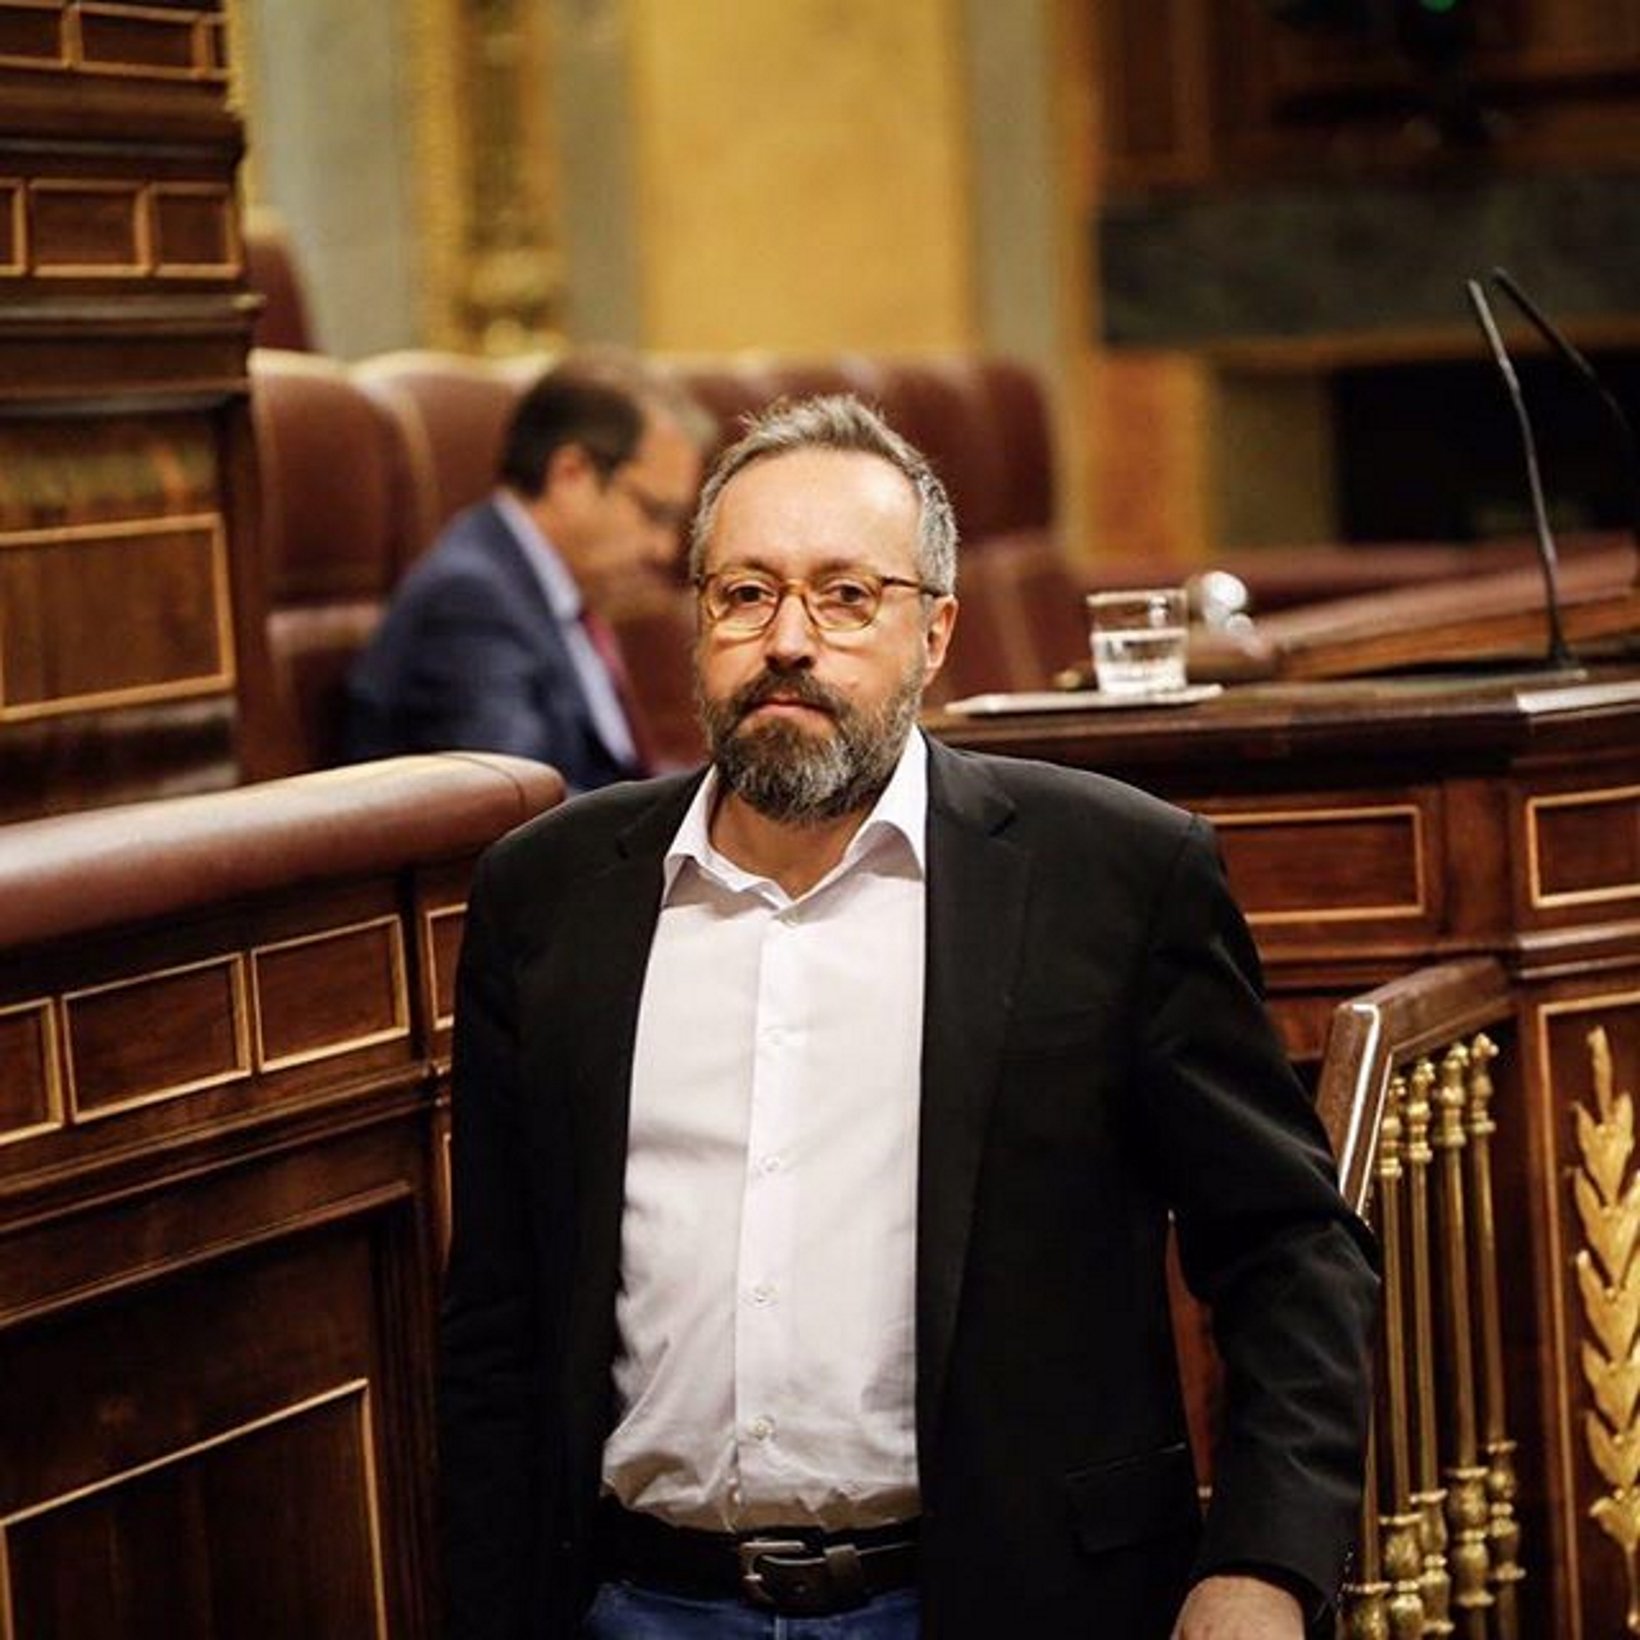 Girauta presidirá la comisión de Defensa del Congreso